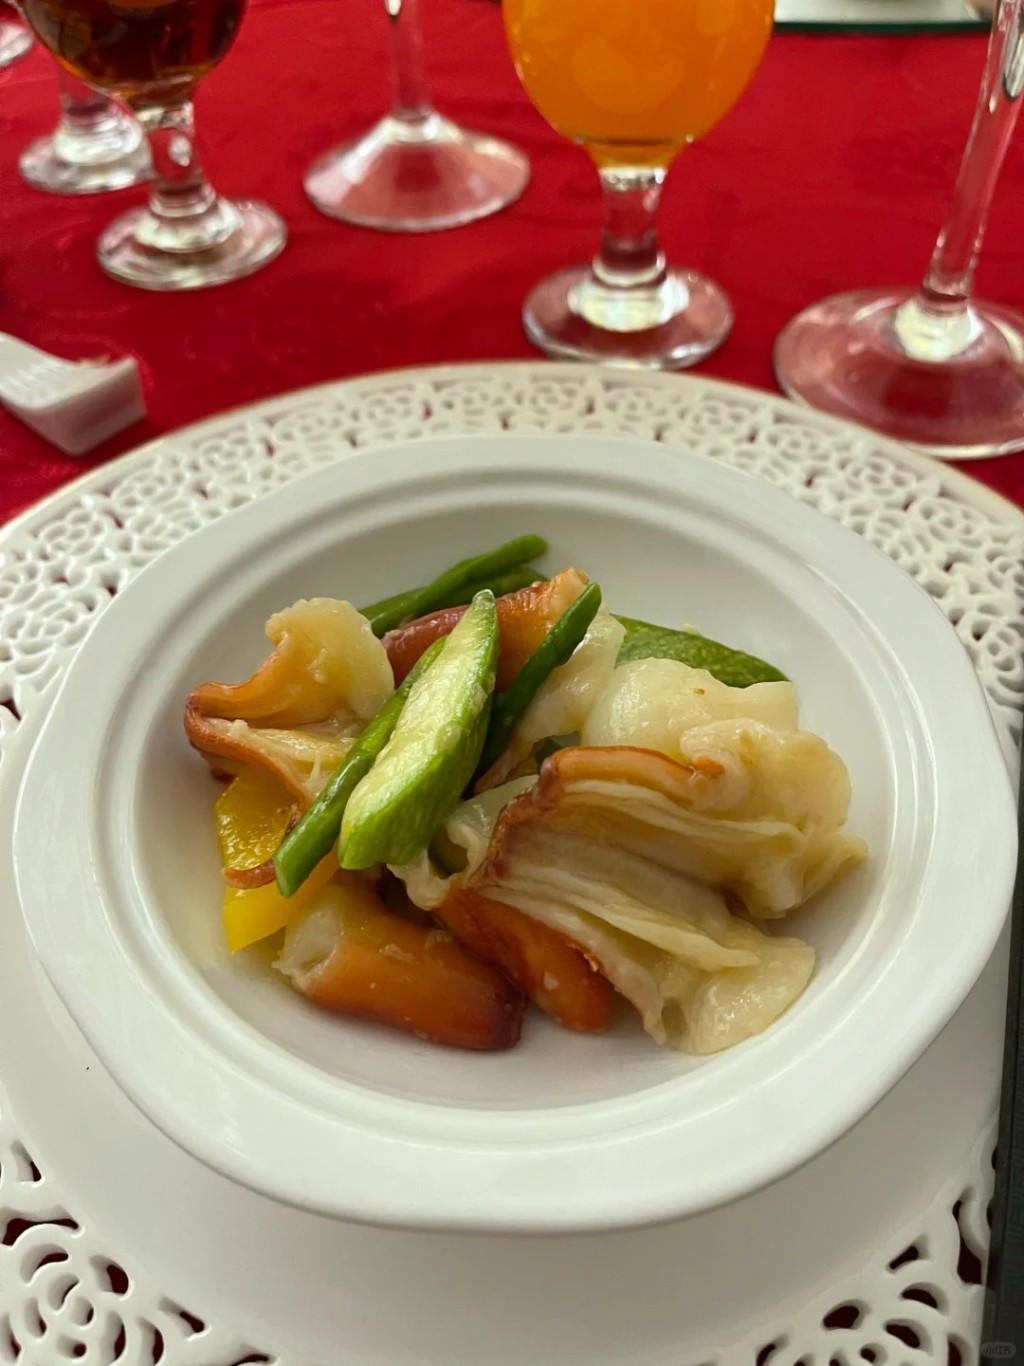 这位网民参加的是一个中式婚宴，席间提供的亦是传统中菜